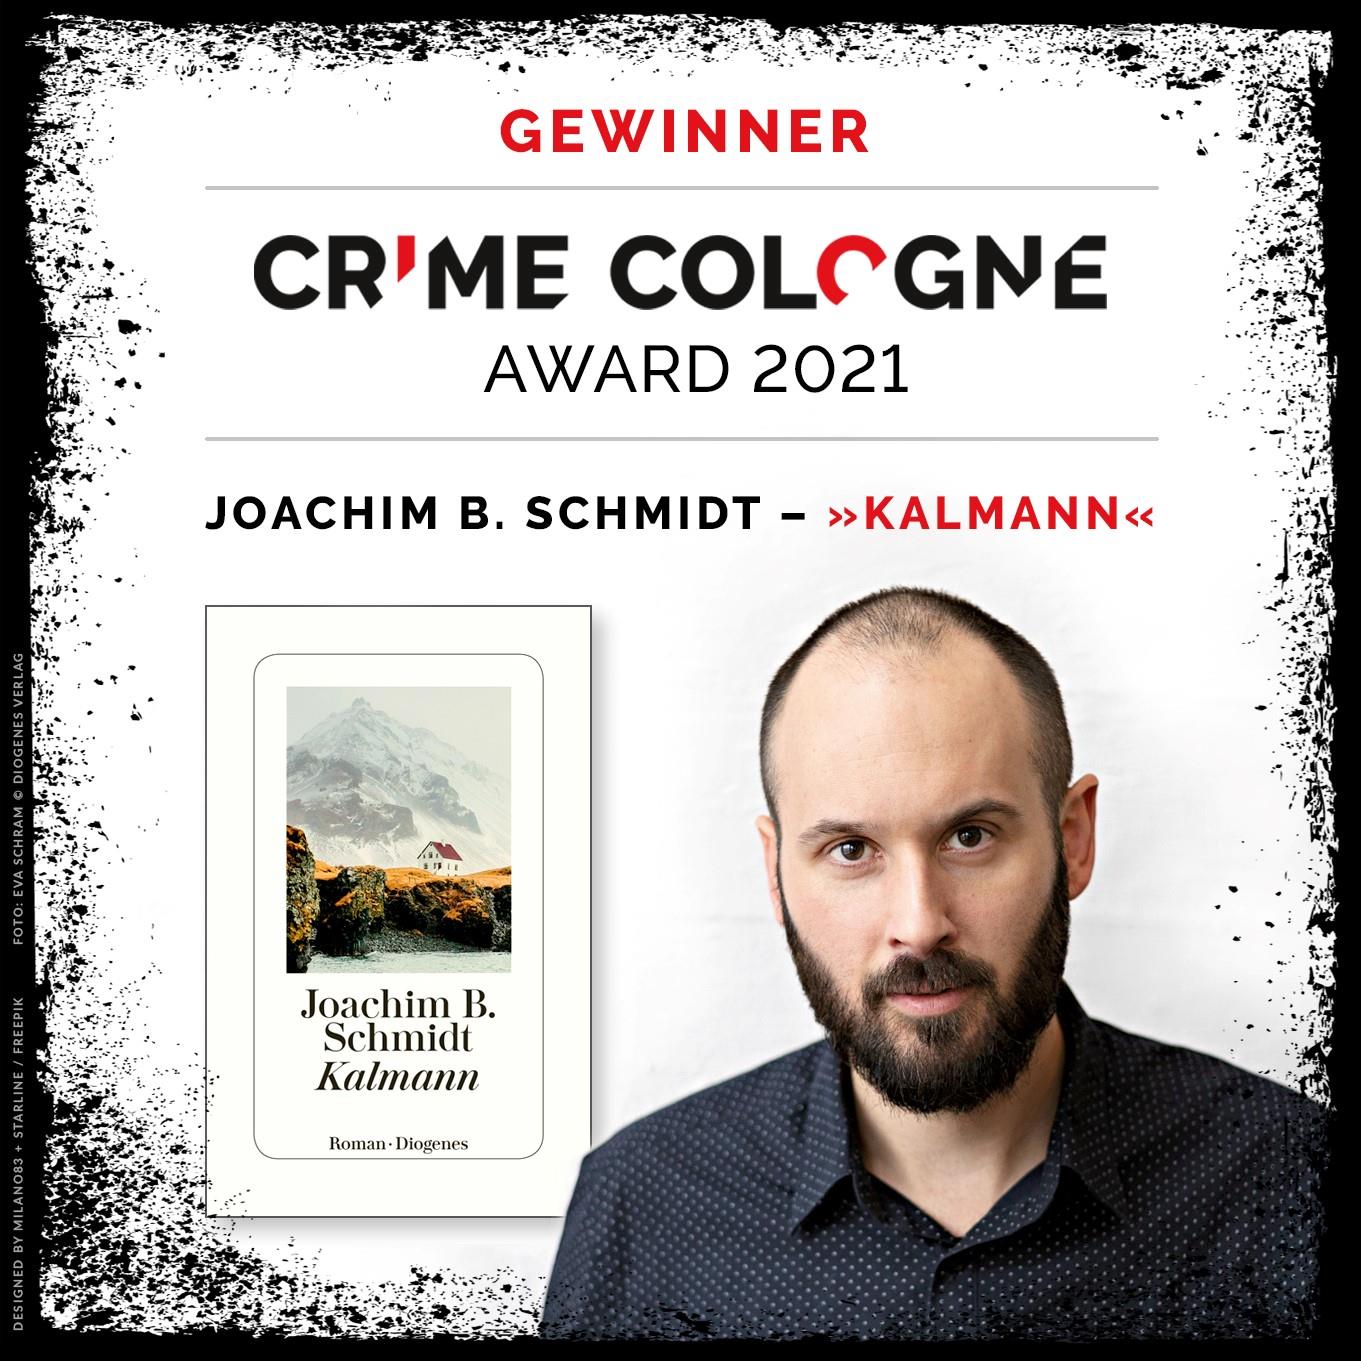 Joachim B. Schmidt Crime Cologne Award